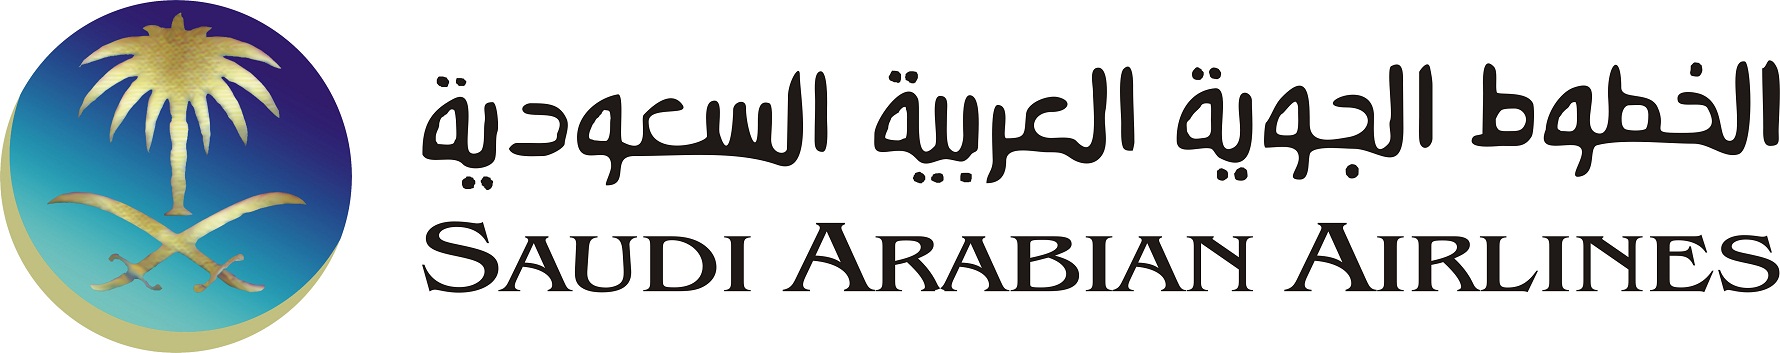 Arab airlines Logos